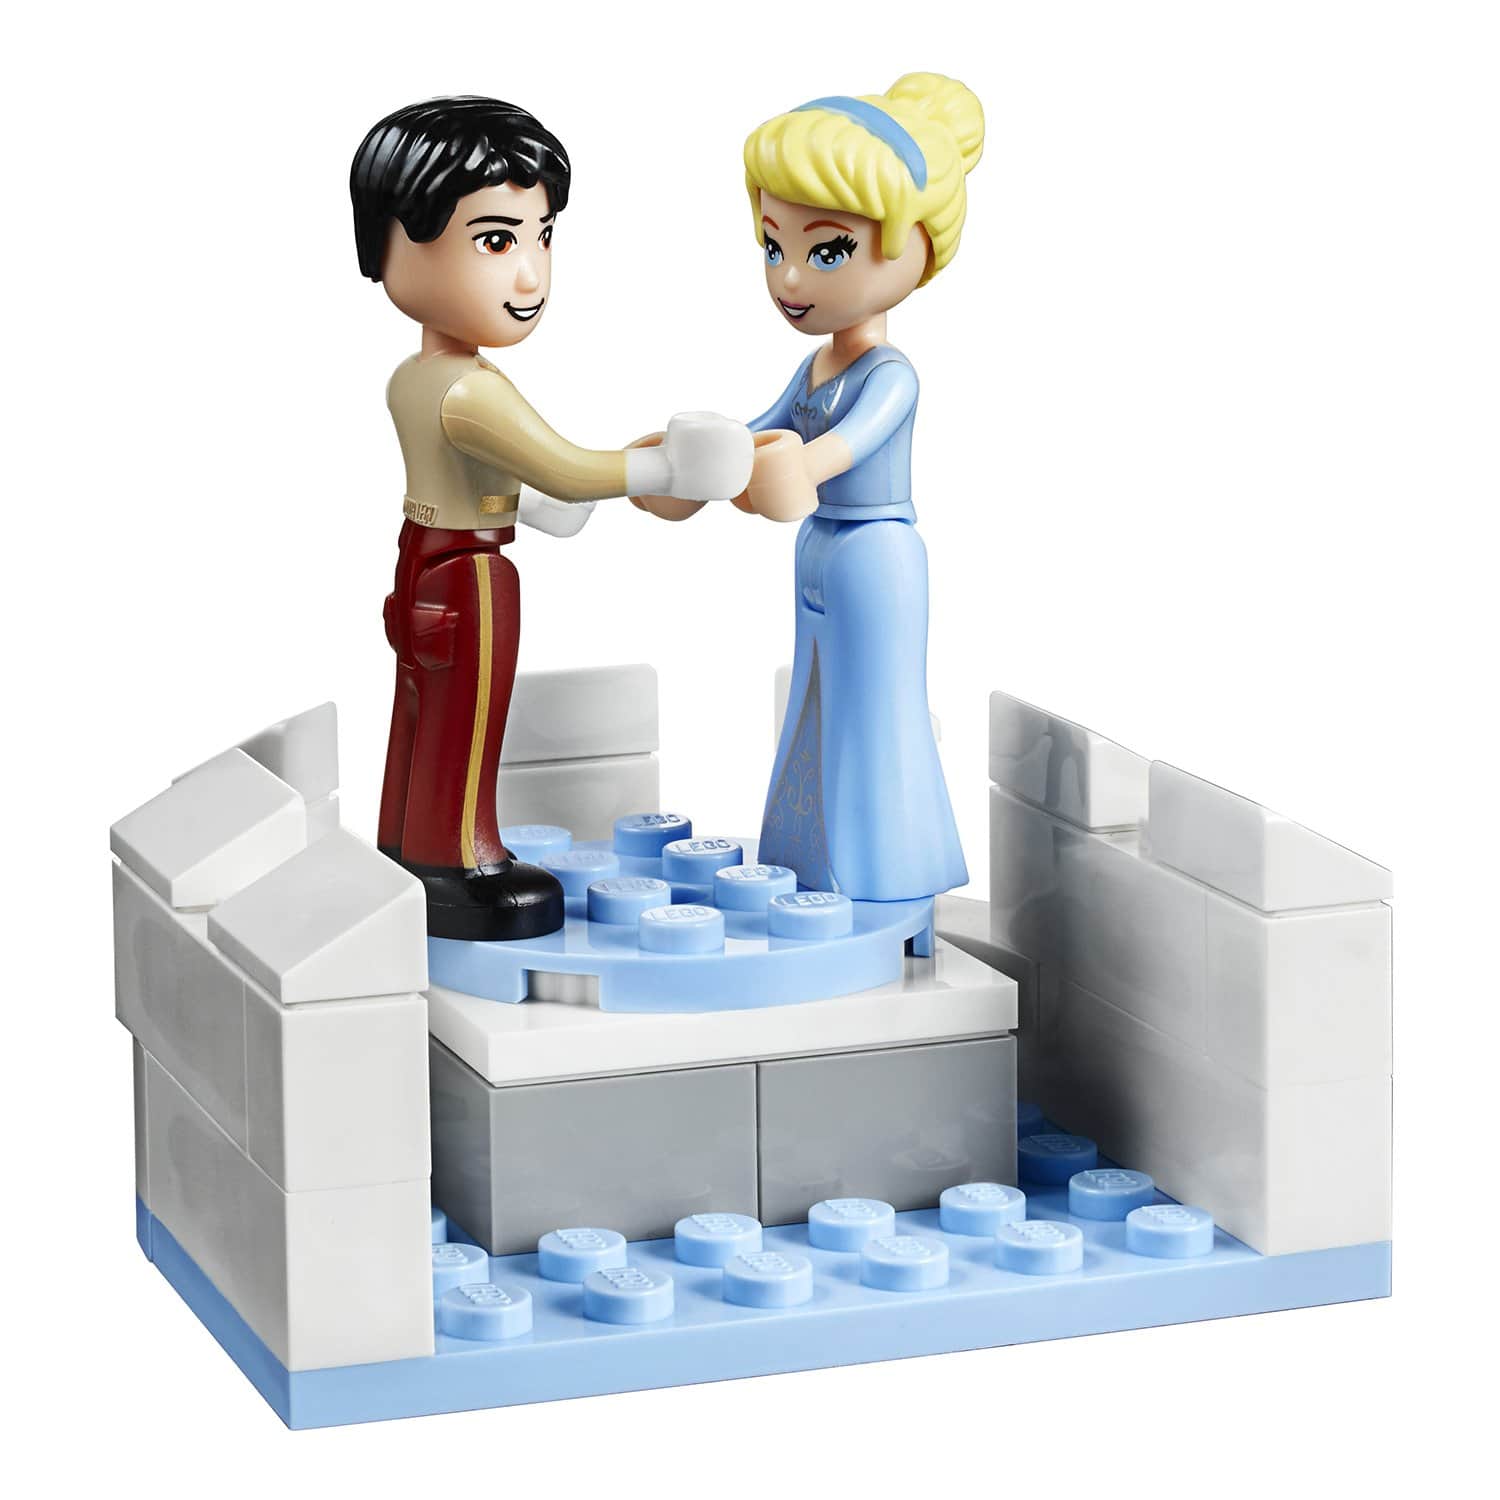 Конструктор LEGO Disney Princess 41154 Волшебный замок Золушки